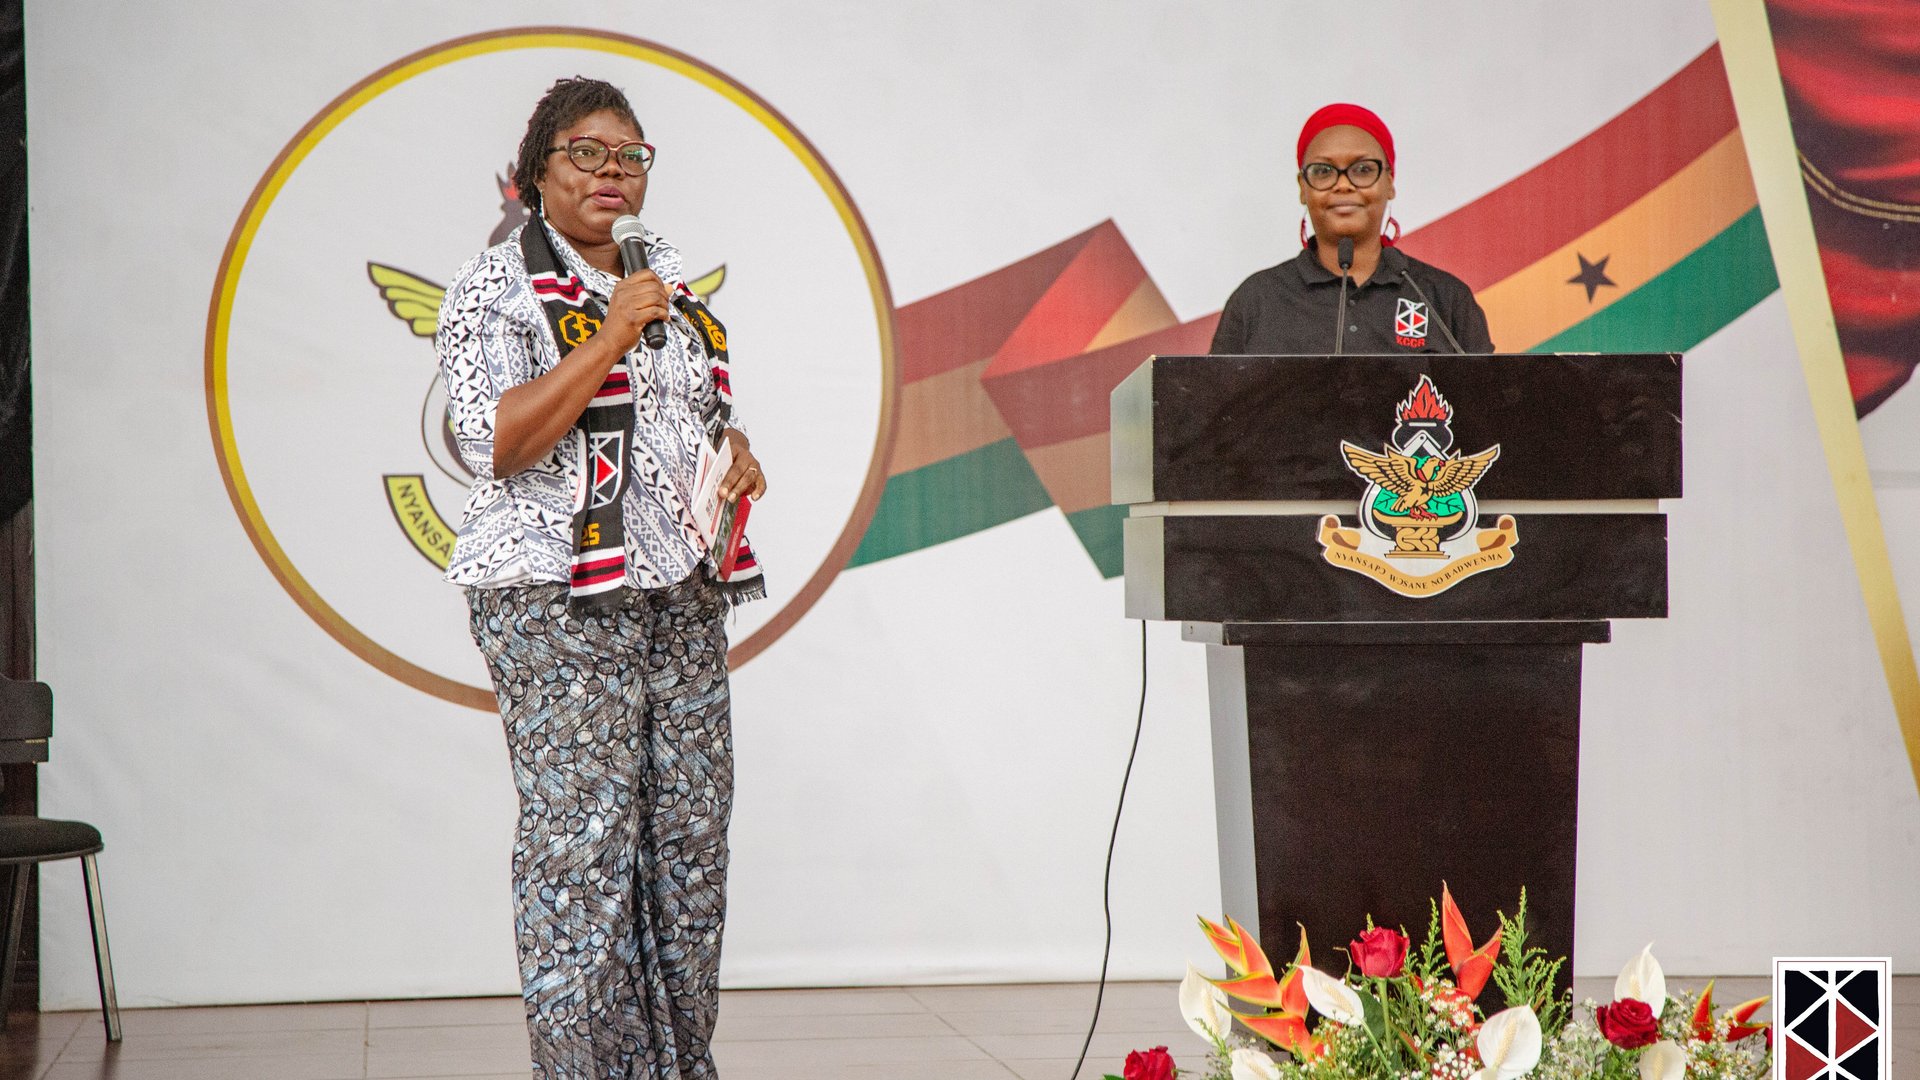 Das Bild zeigt Dr. Lydia Mosi, Universität Ghana, und Dr. Oumou Maiga-Ascofare, KCCR, auf der Bühne neben bzw. hinterm Redepult.